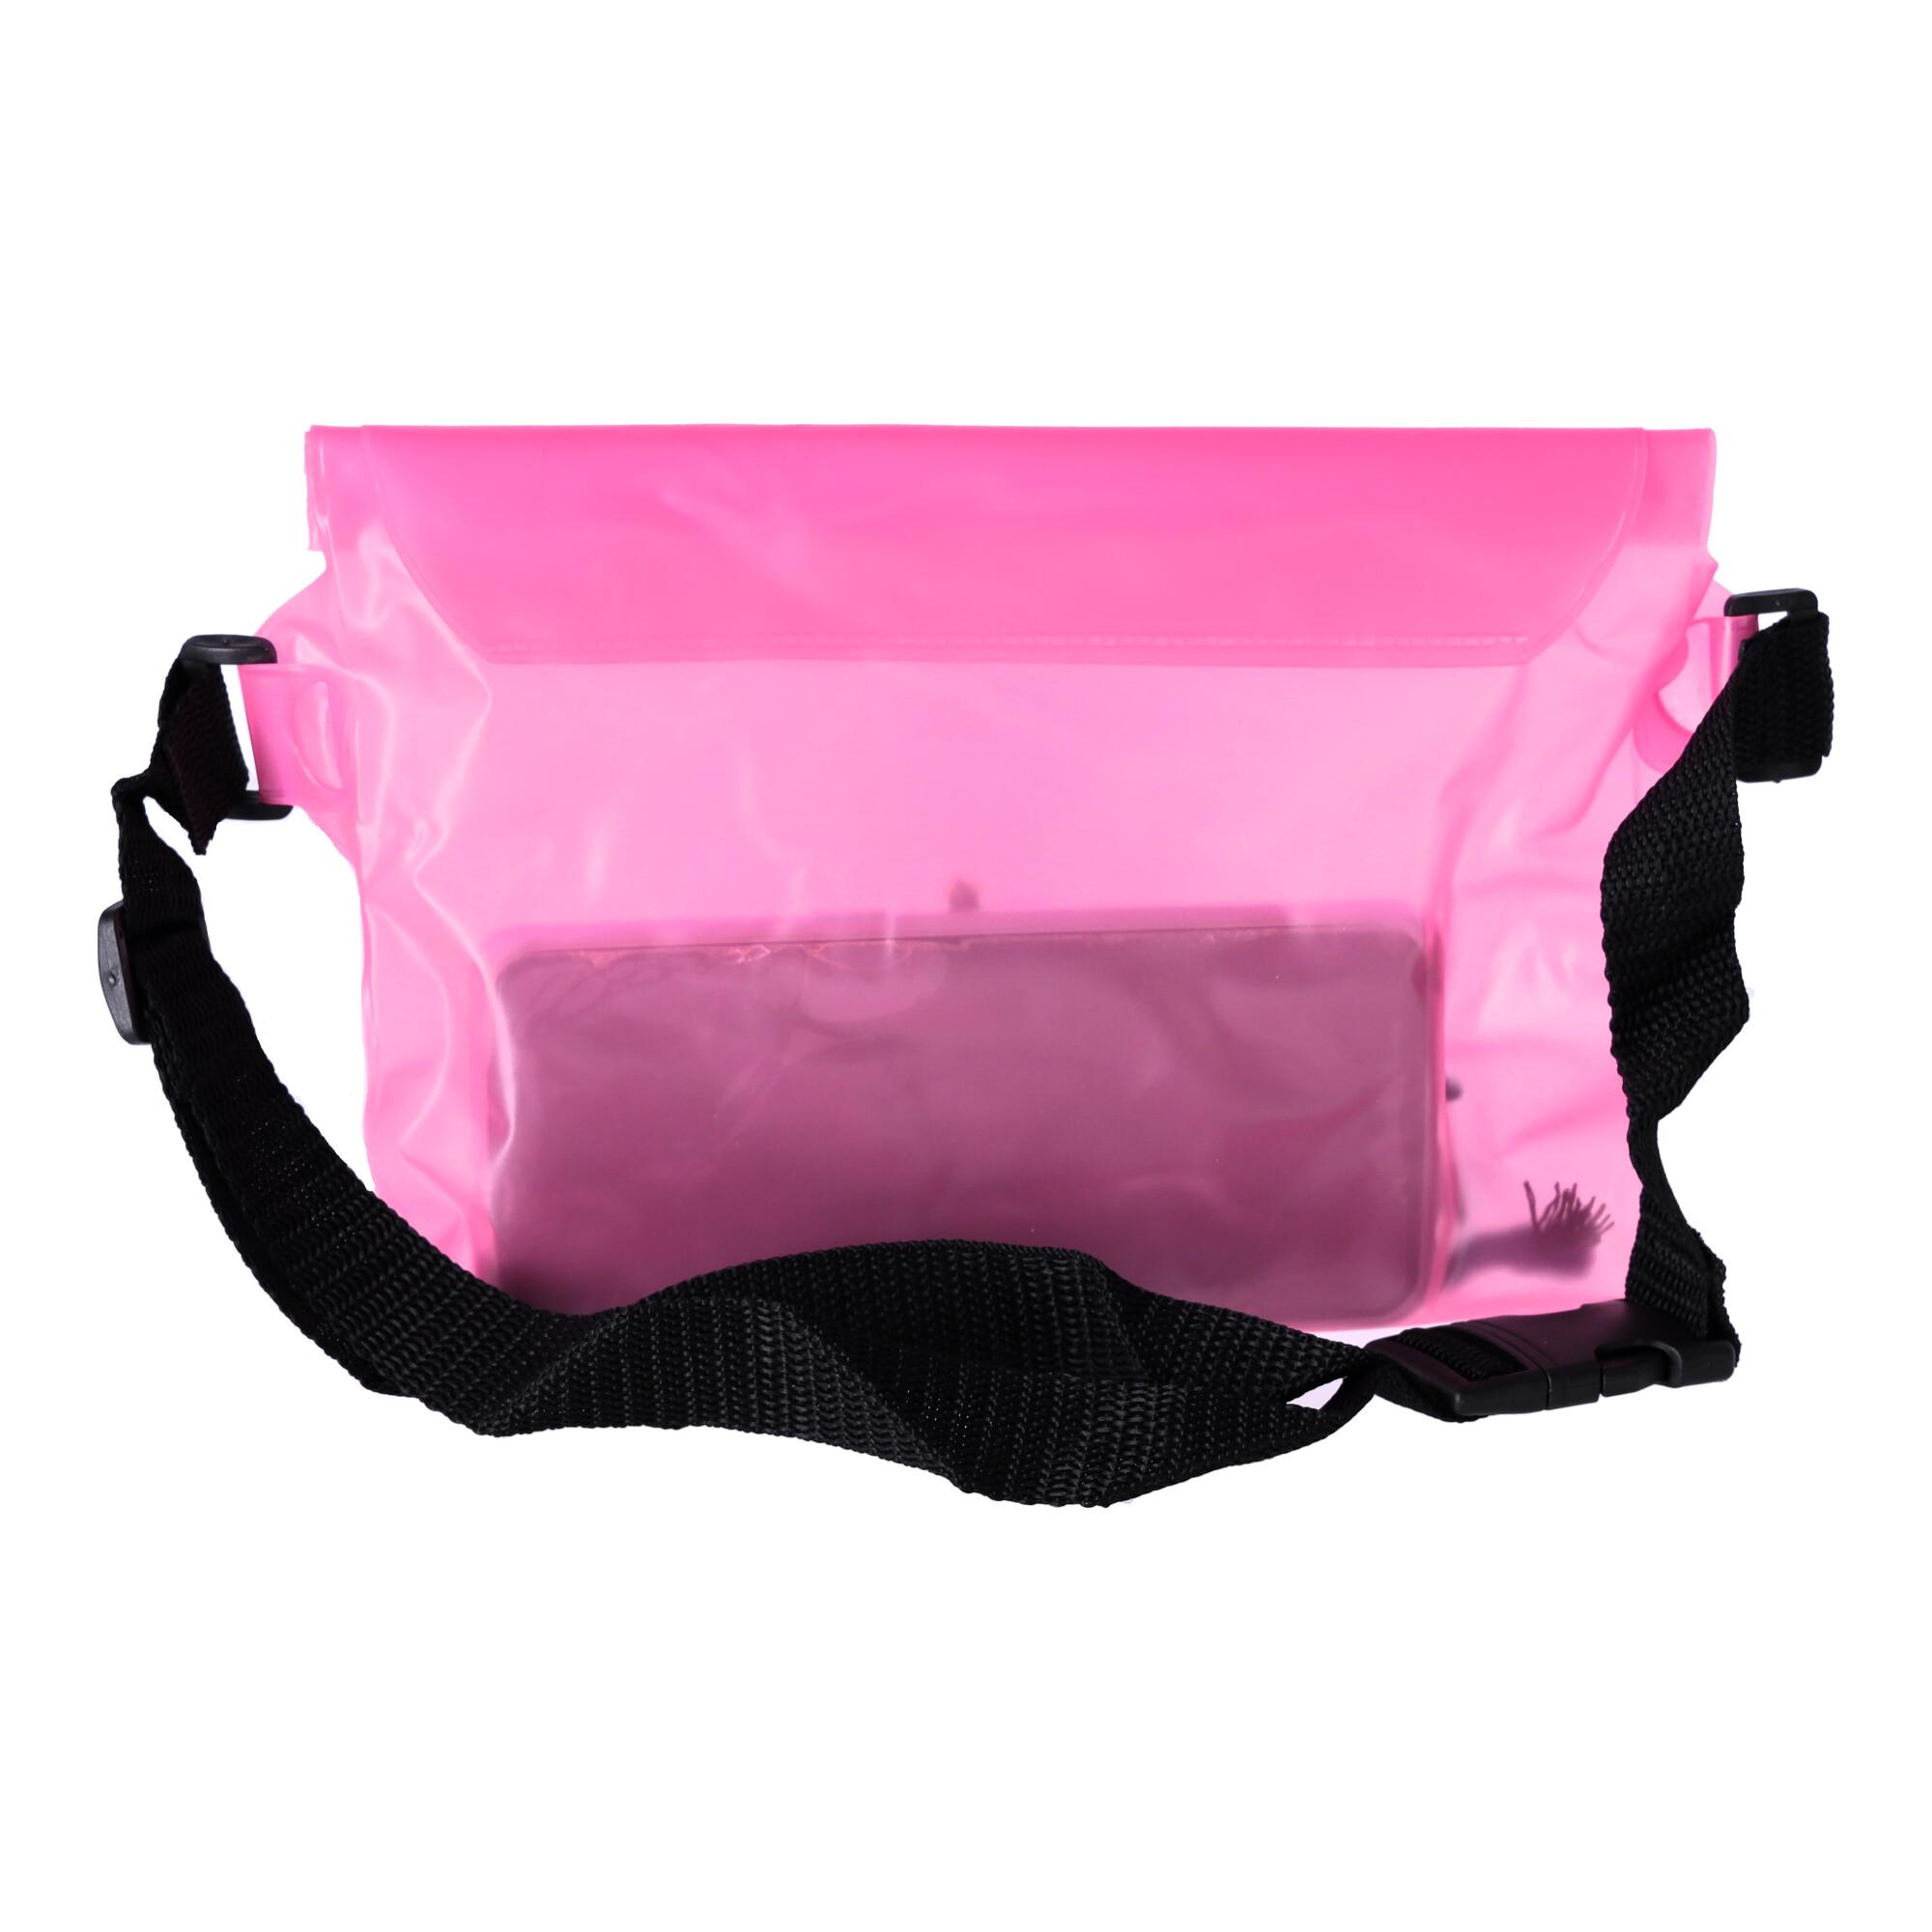 Waterproof kidney, belt pouch - pink